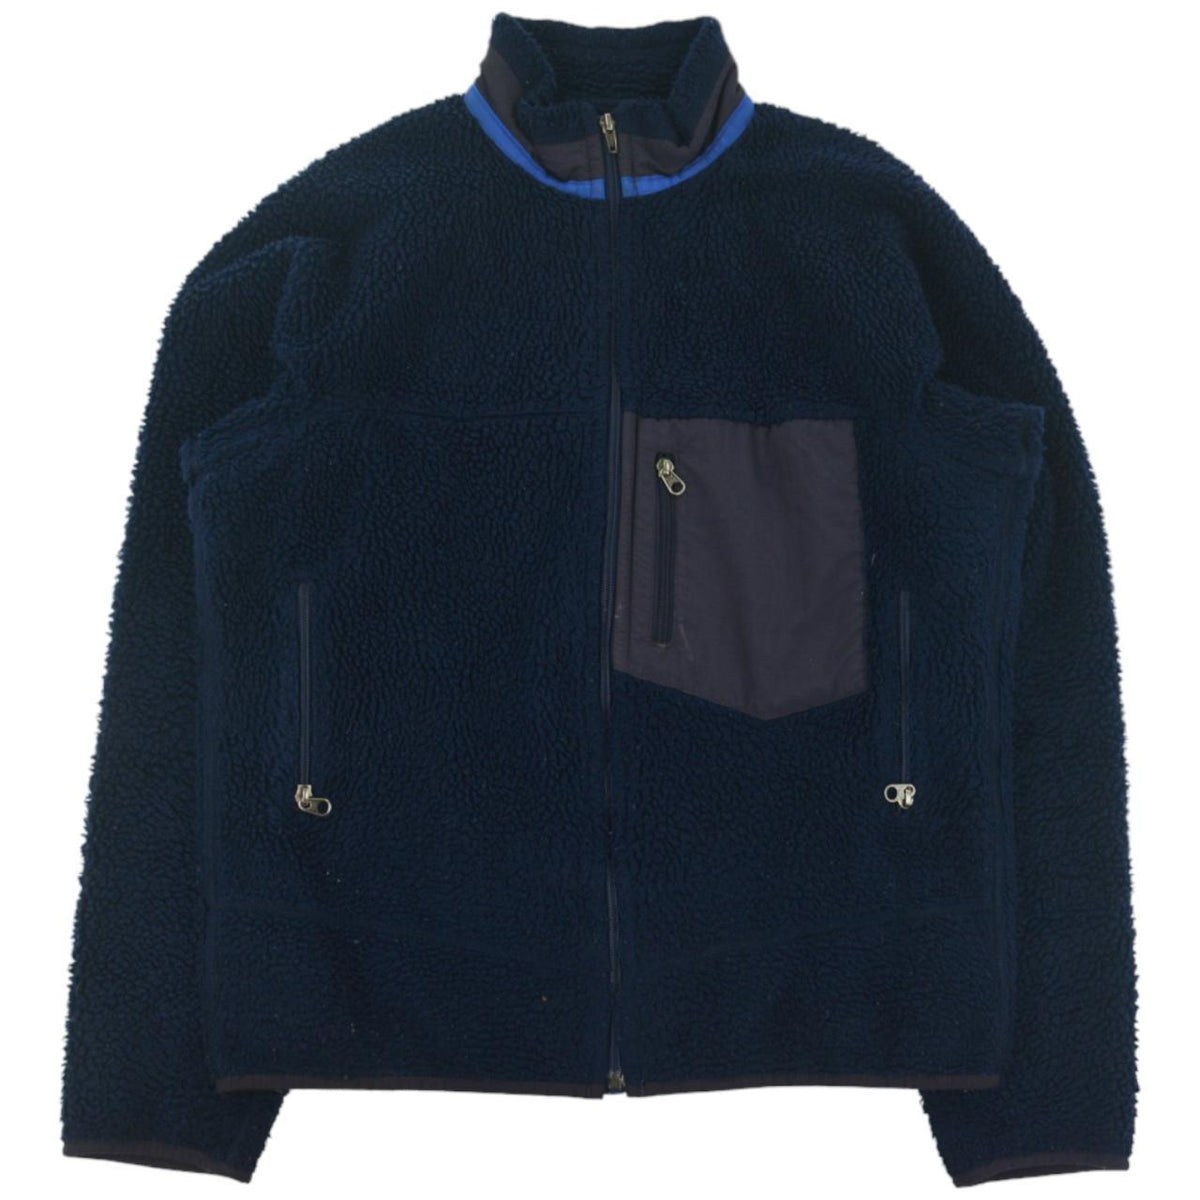 Vintage Patagonia Retro X Fleece Jacket Size M